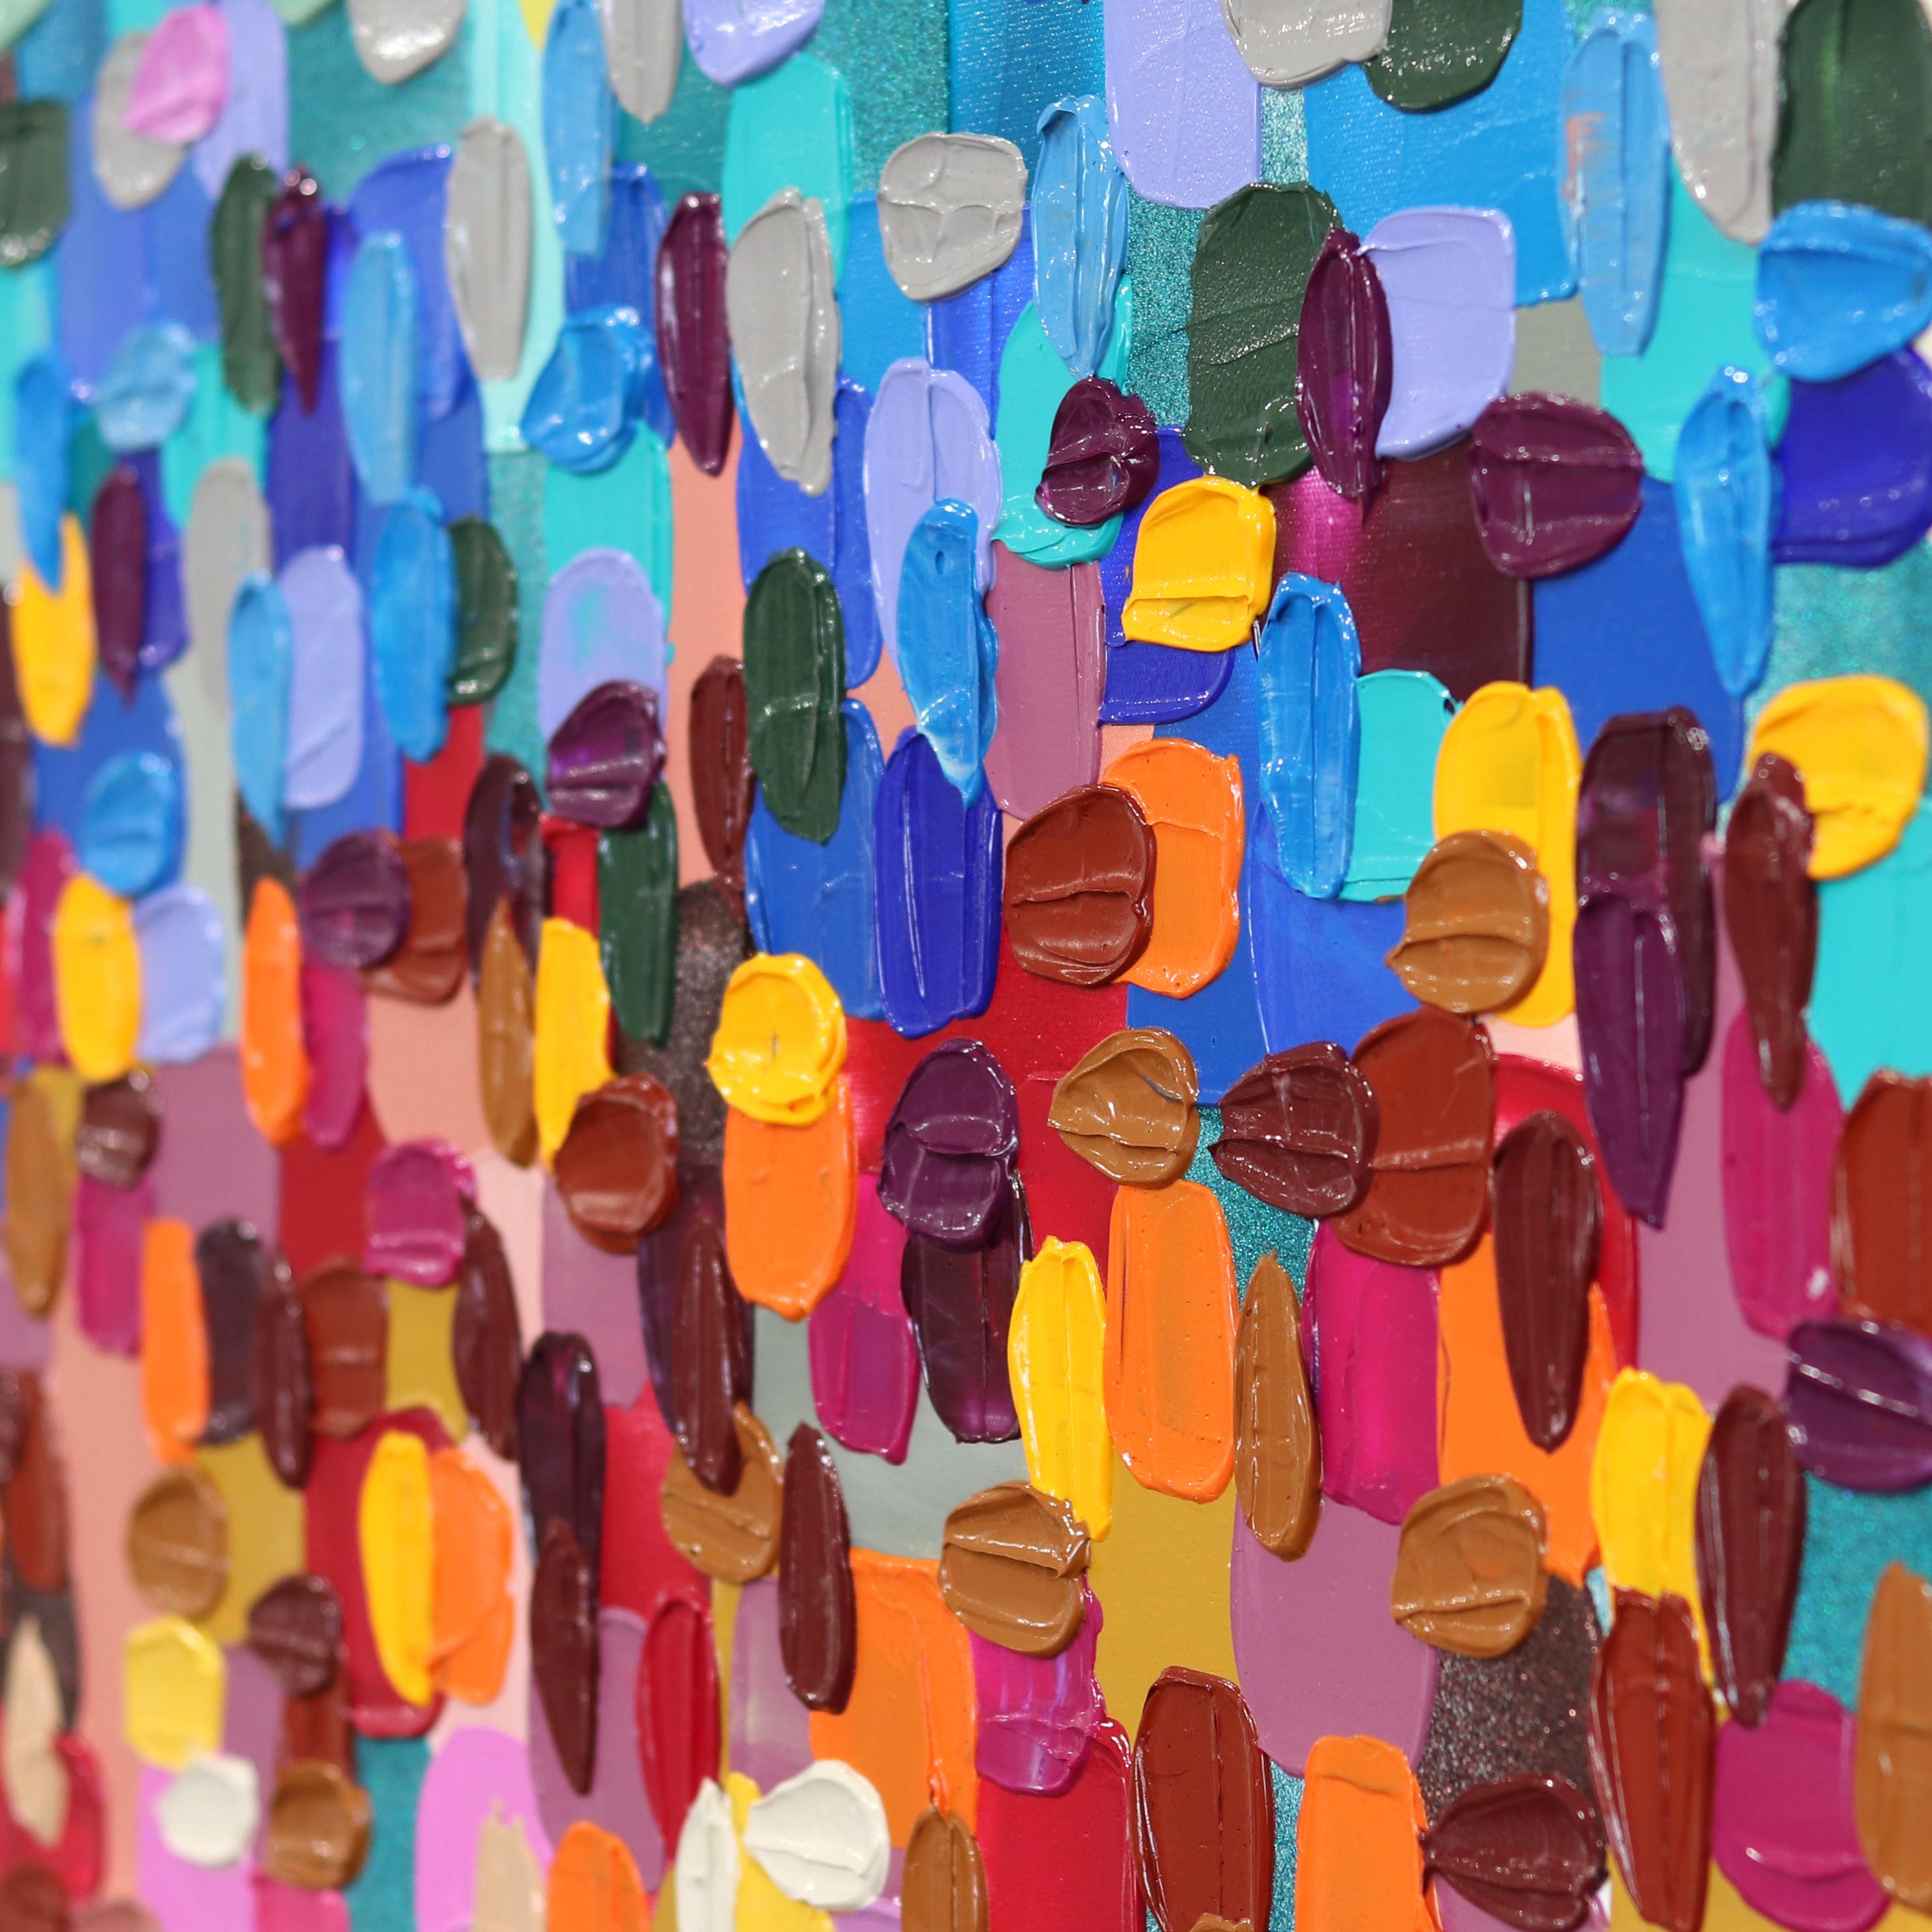 Die abstrakten Kunstwerke der Künstlerin Shiri Phillips sind mit pastos gemalten Strichen in leuchtenden Farben gestaltet. Ihre Bilder sind durch die Schichtung von Acrylfarbe in fließenden Pinselstrichen mit Textur überflutet. Inspiriert von der